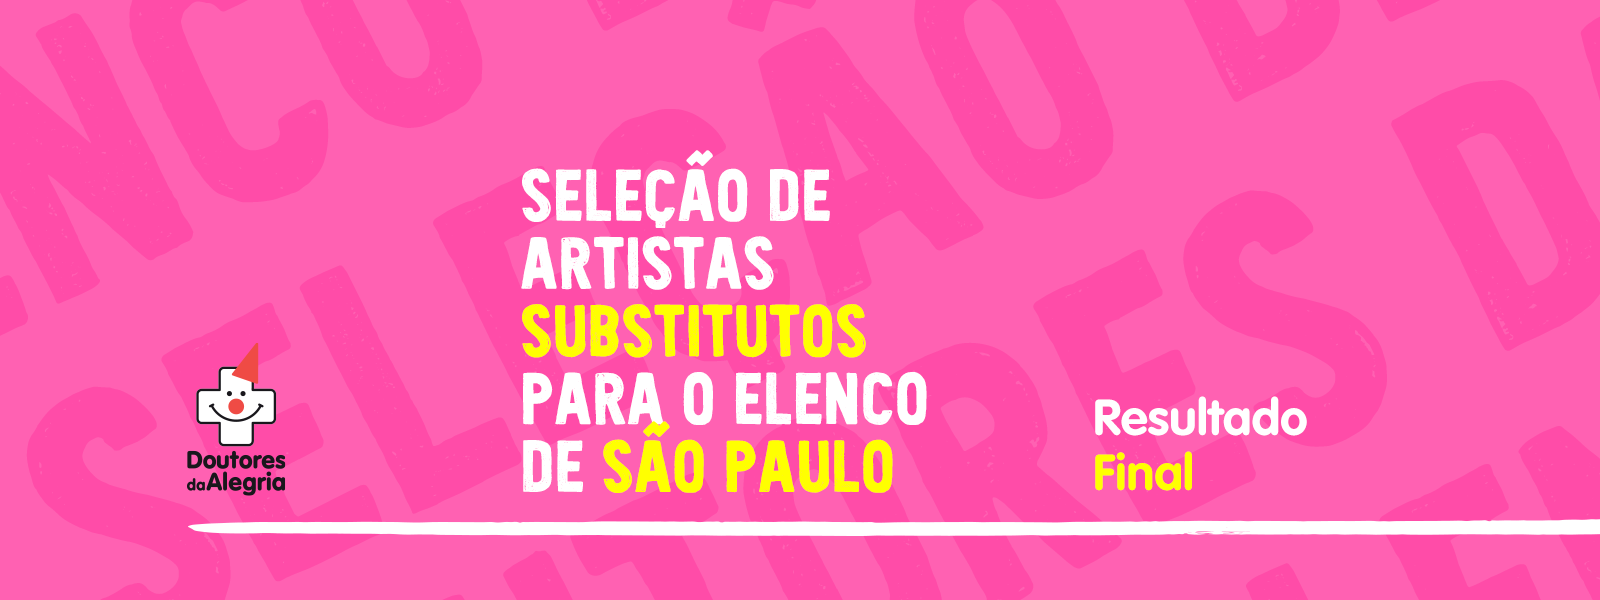 Doutores da Alegria divulga resultado de seleção de artistas em São Paulo